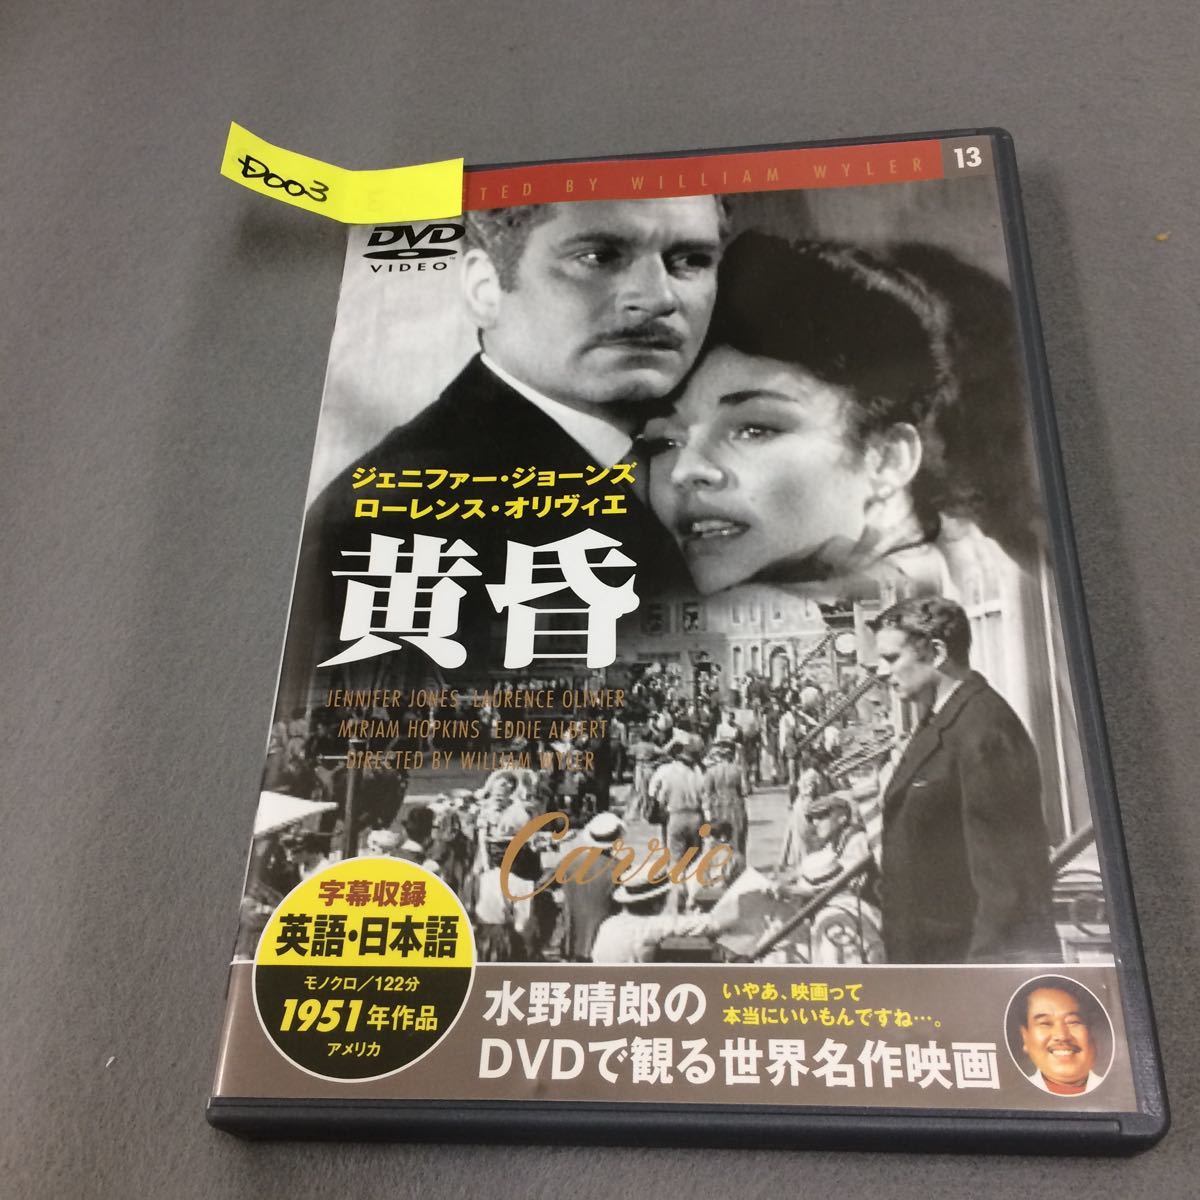 悲恋 Dvdの値段と価格推移は 30件の売買情報を集計した悲恋 Dvdの価格や価値の推移データを公開